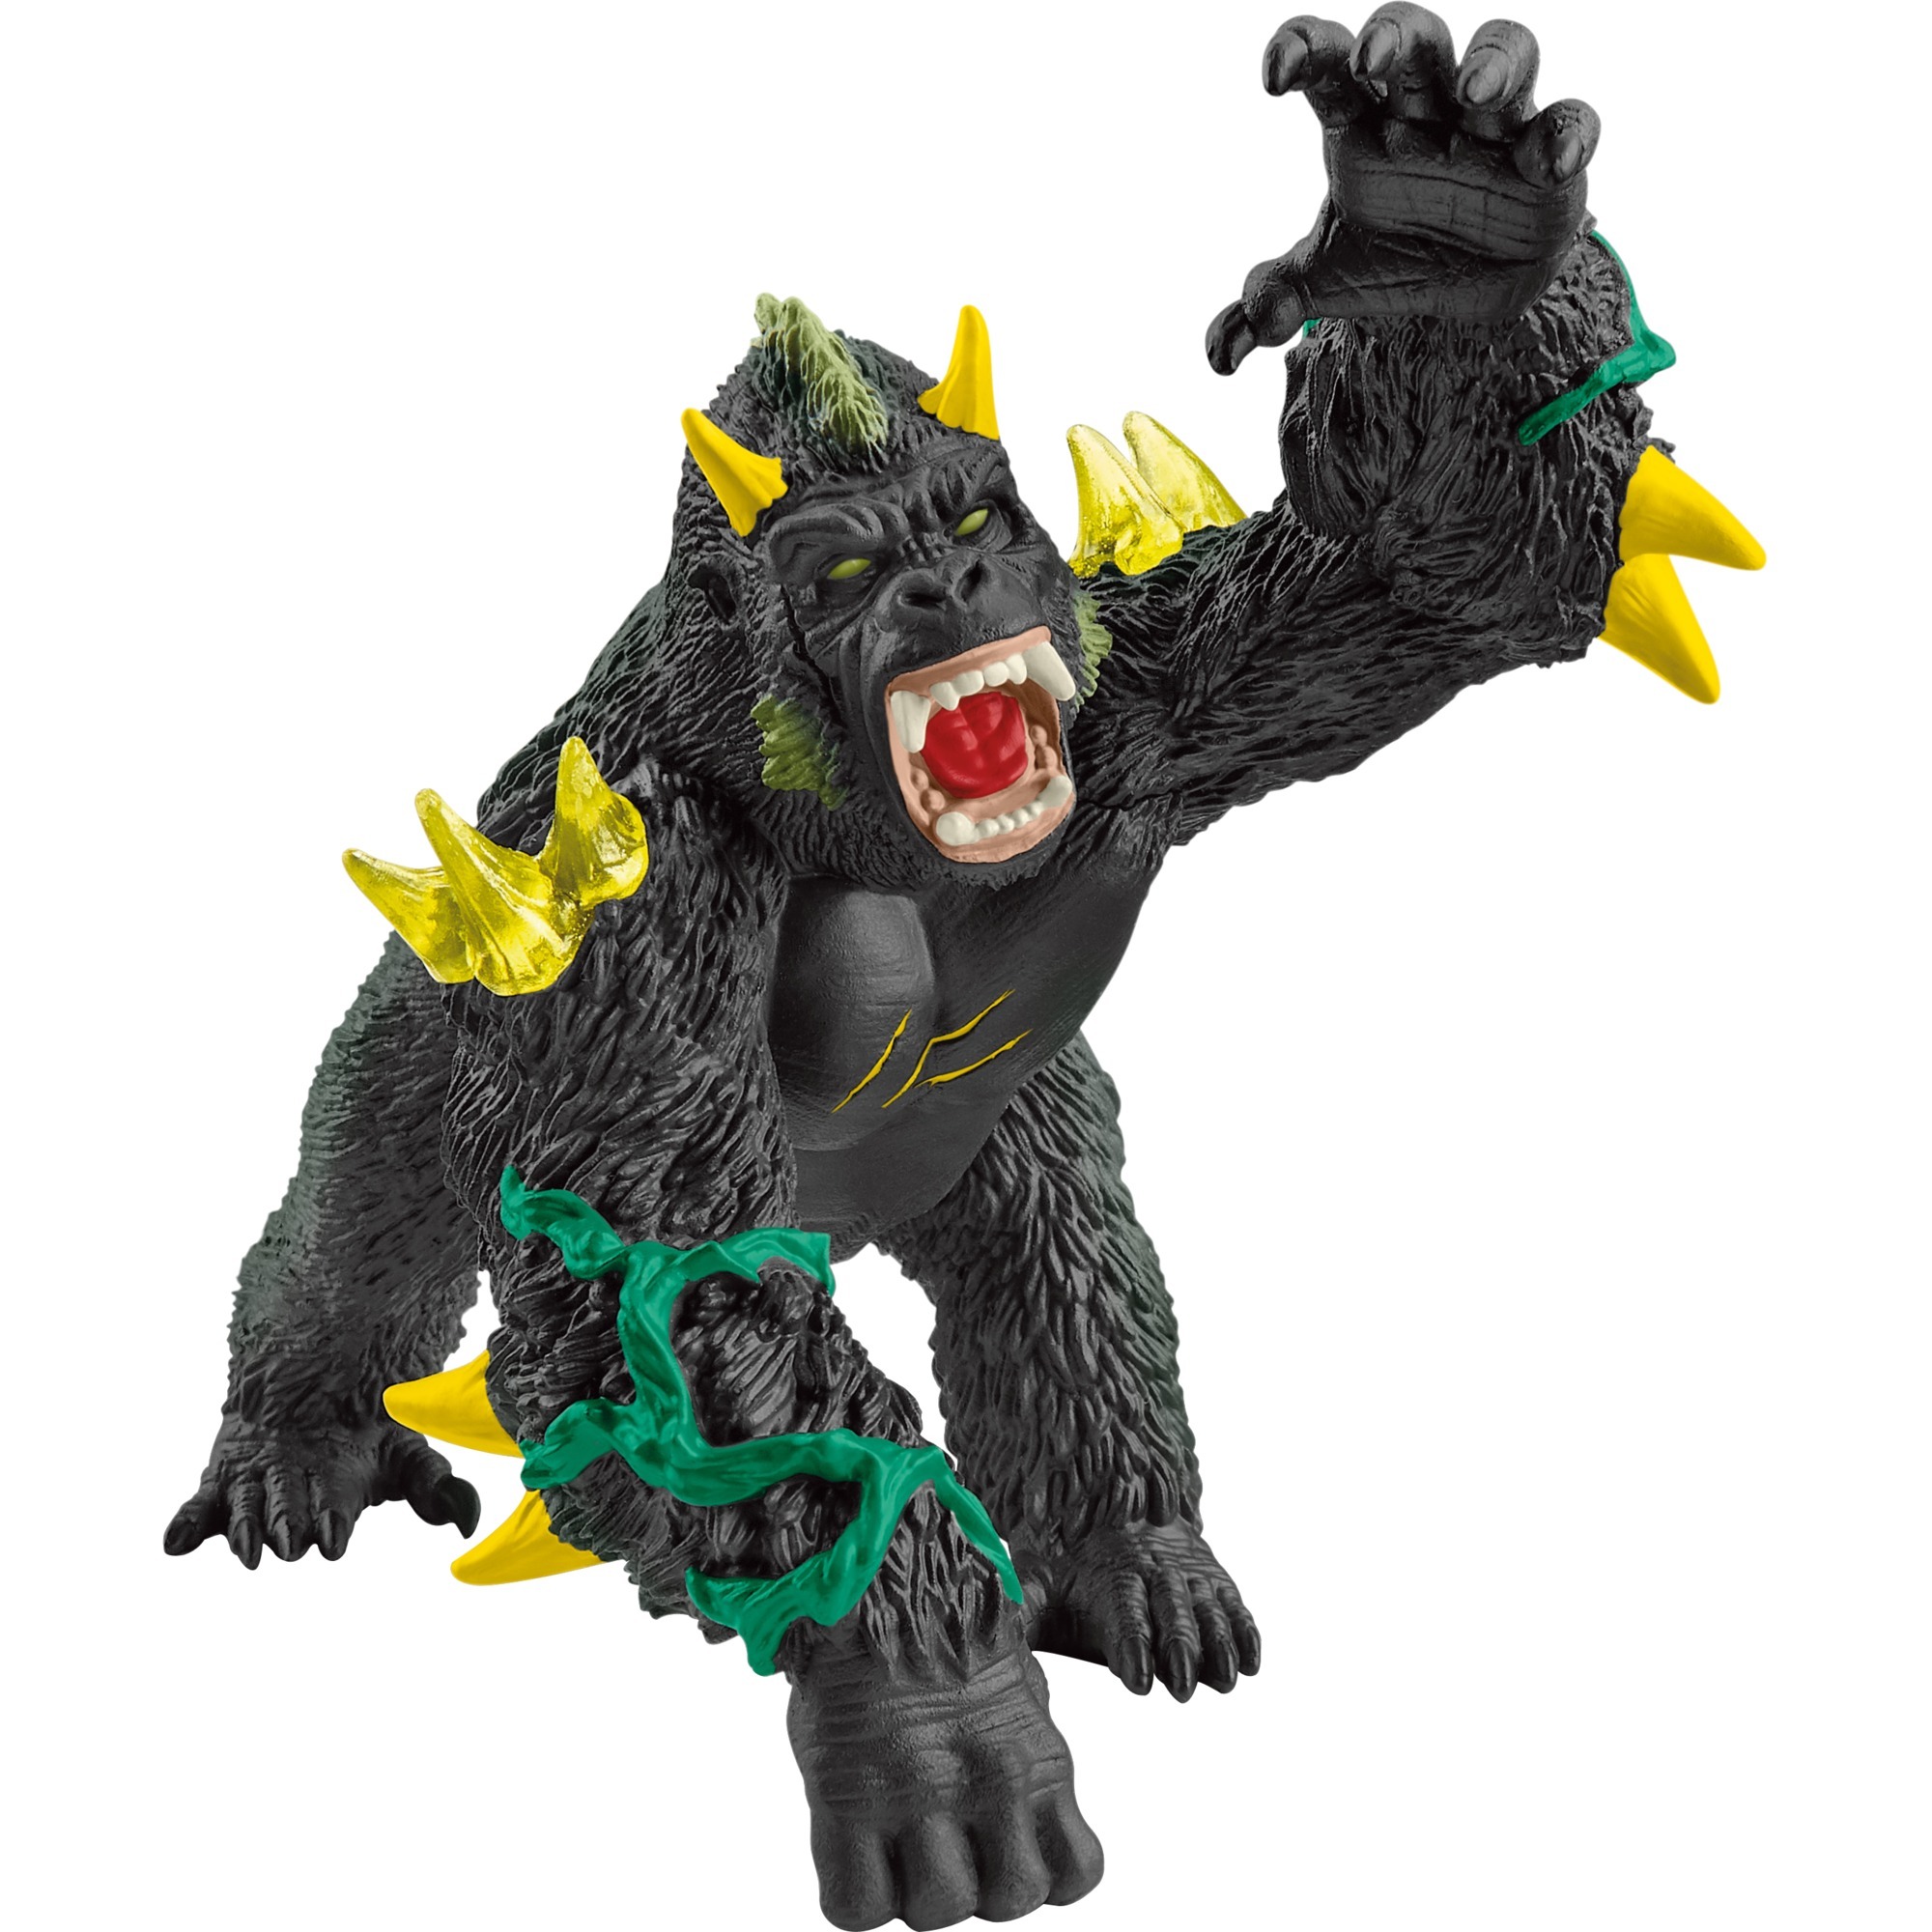 Image of Alternate - Eldrador Monster Gorilla, Spielfigur online einkaufen bei Alternate